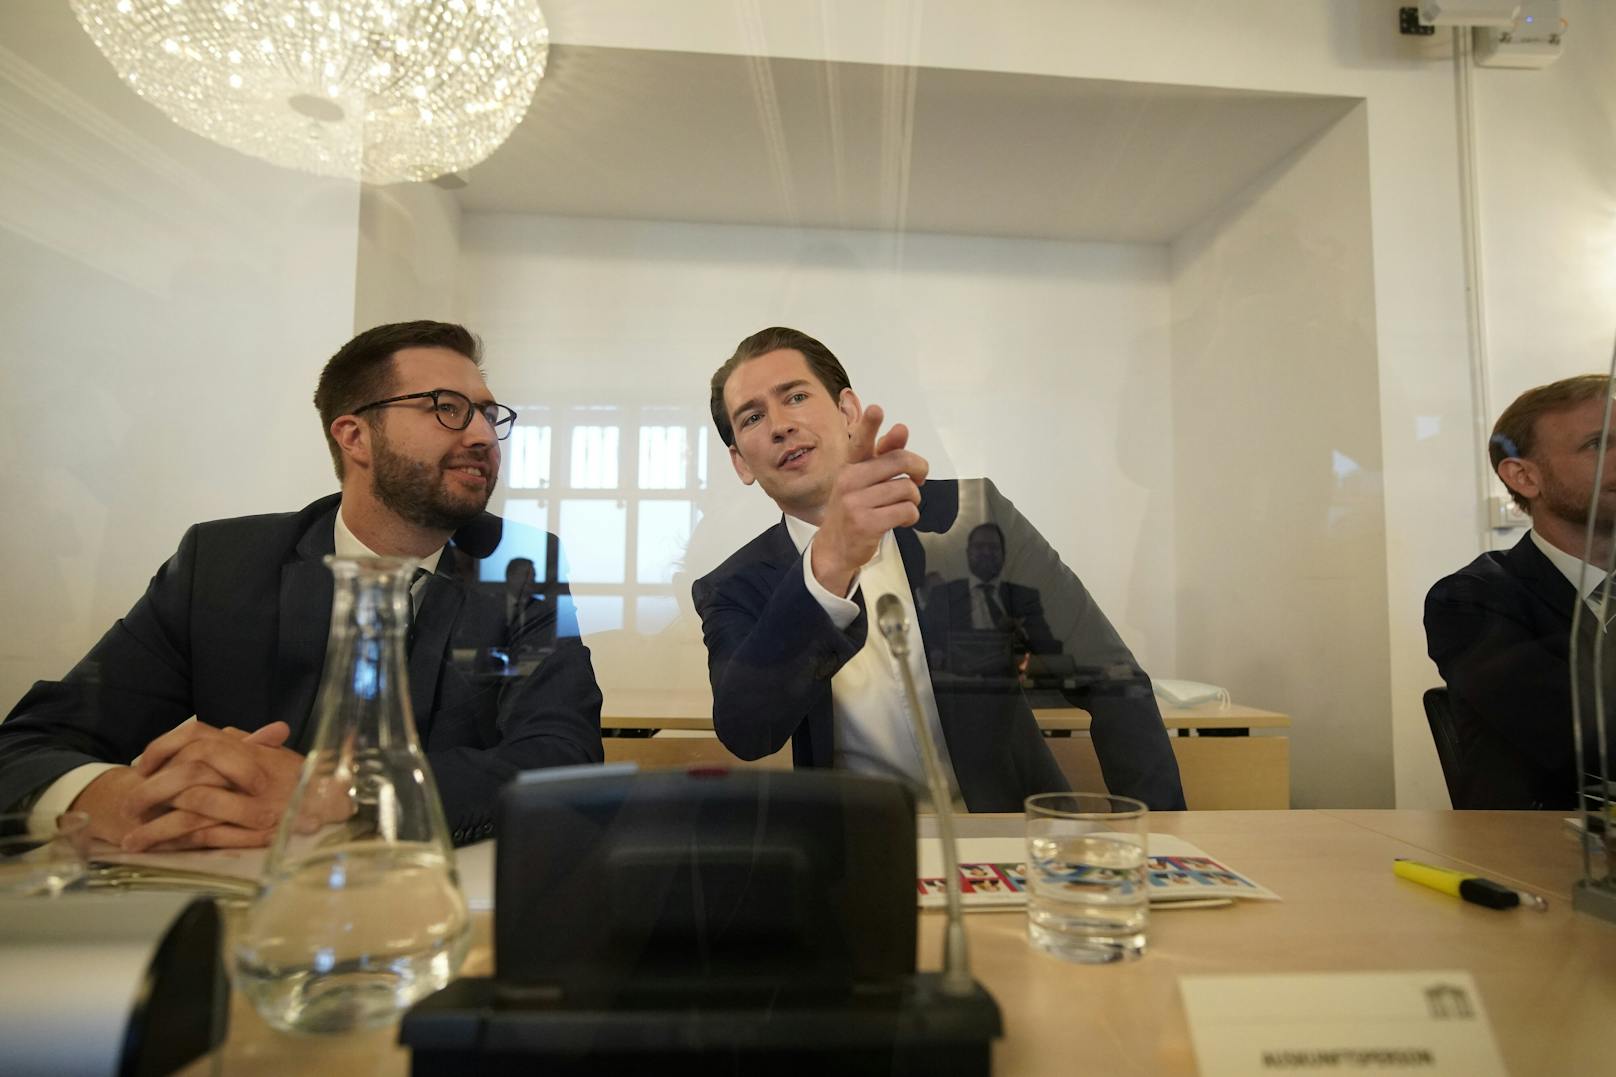 Kurz mit Vertrauensperson Lucas Weigerstorfer aus seinem Kabinett